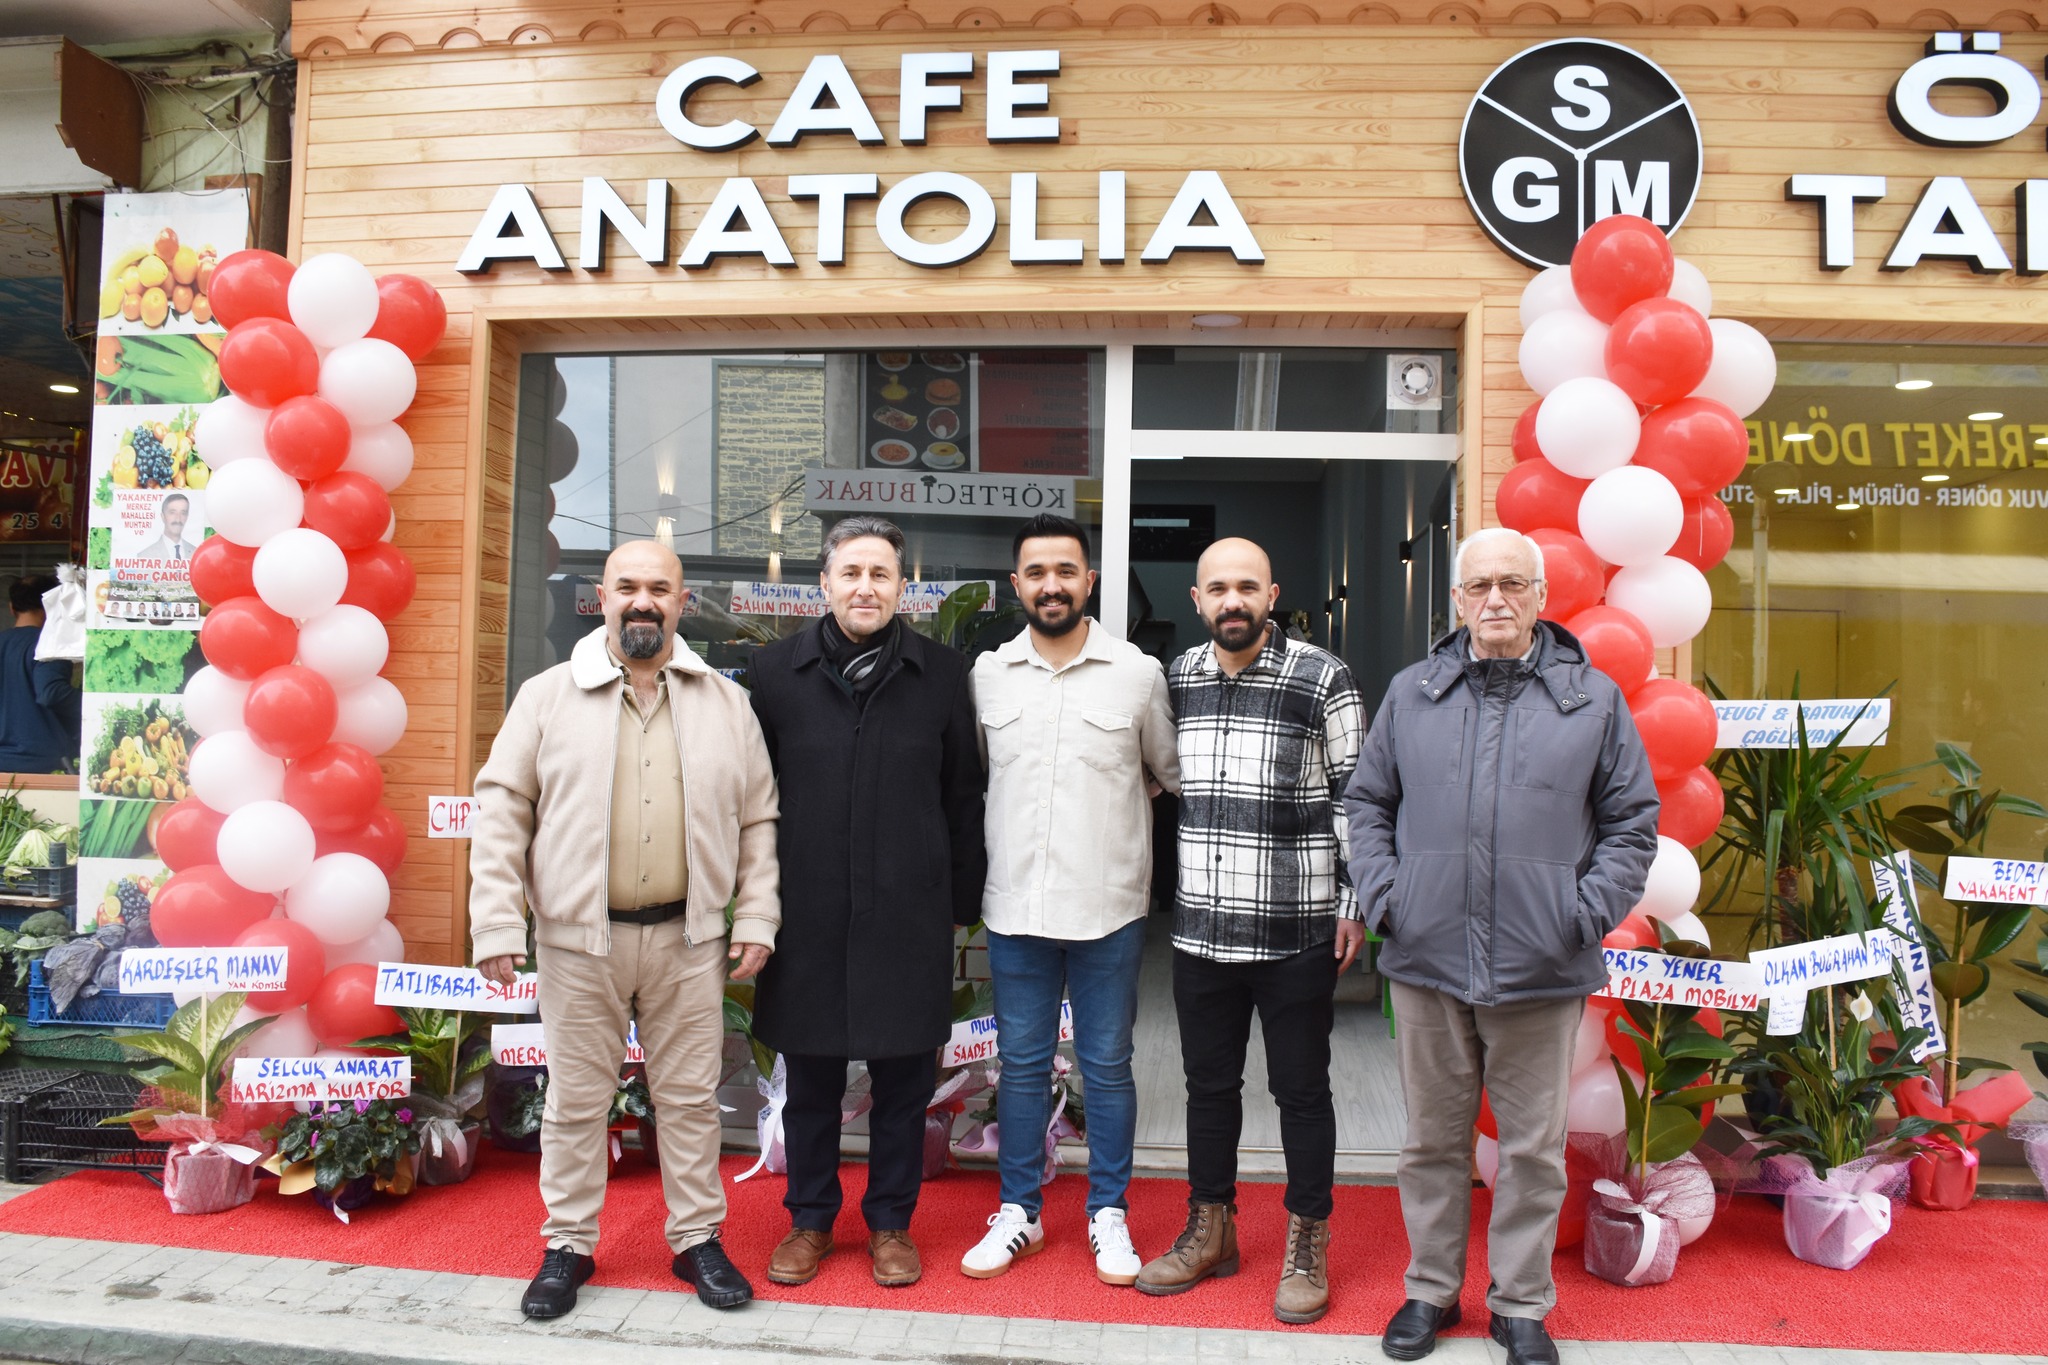 Belediye Başkanımız Hüseyin Kıyma ve Meclis üyemiz Turan Çakır, ilçemizde açılışı yapılarak hizmete giren ANATOLIA CAFE ye ziyarette bulunarak, işletmecisi Suat Ak’a ve oğullarına hayırlı bereketli kazançlar dilediler.